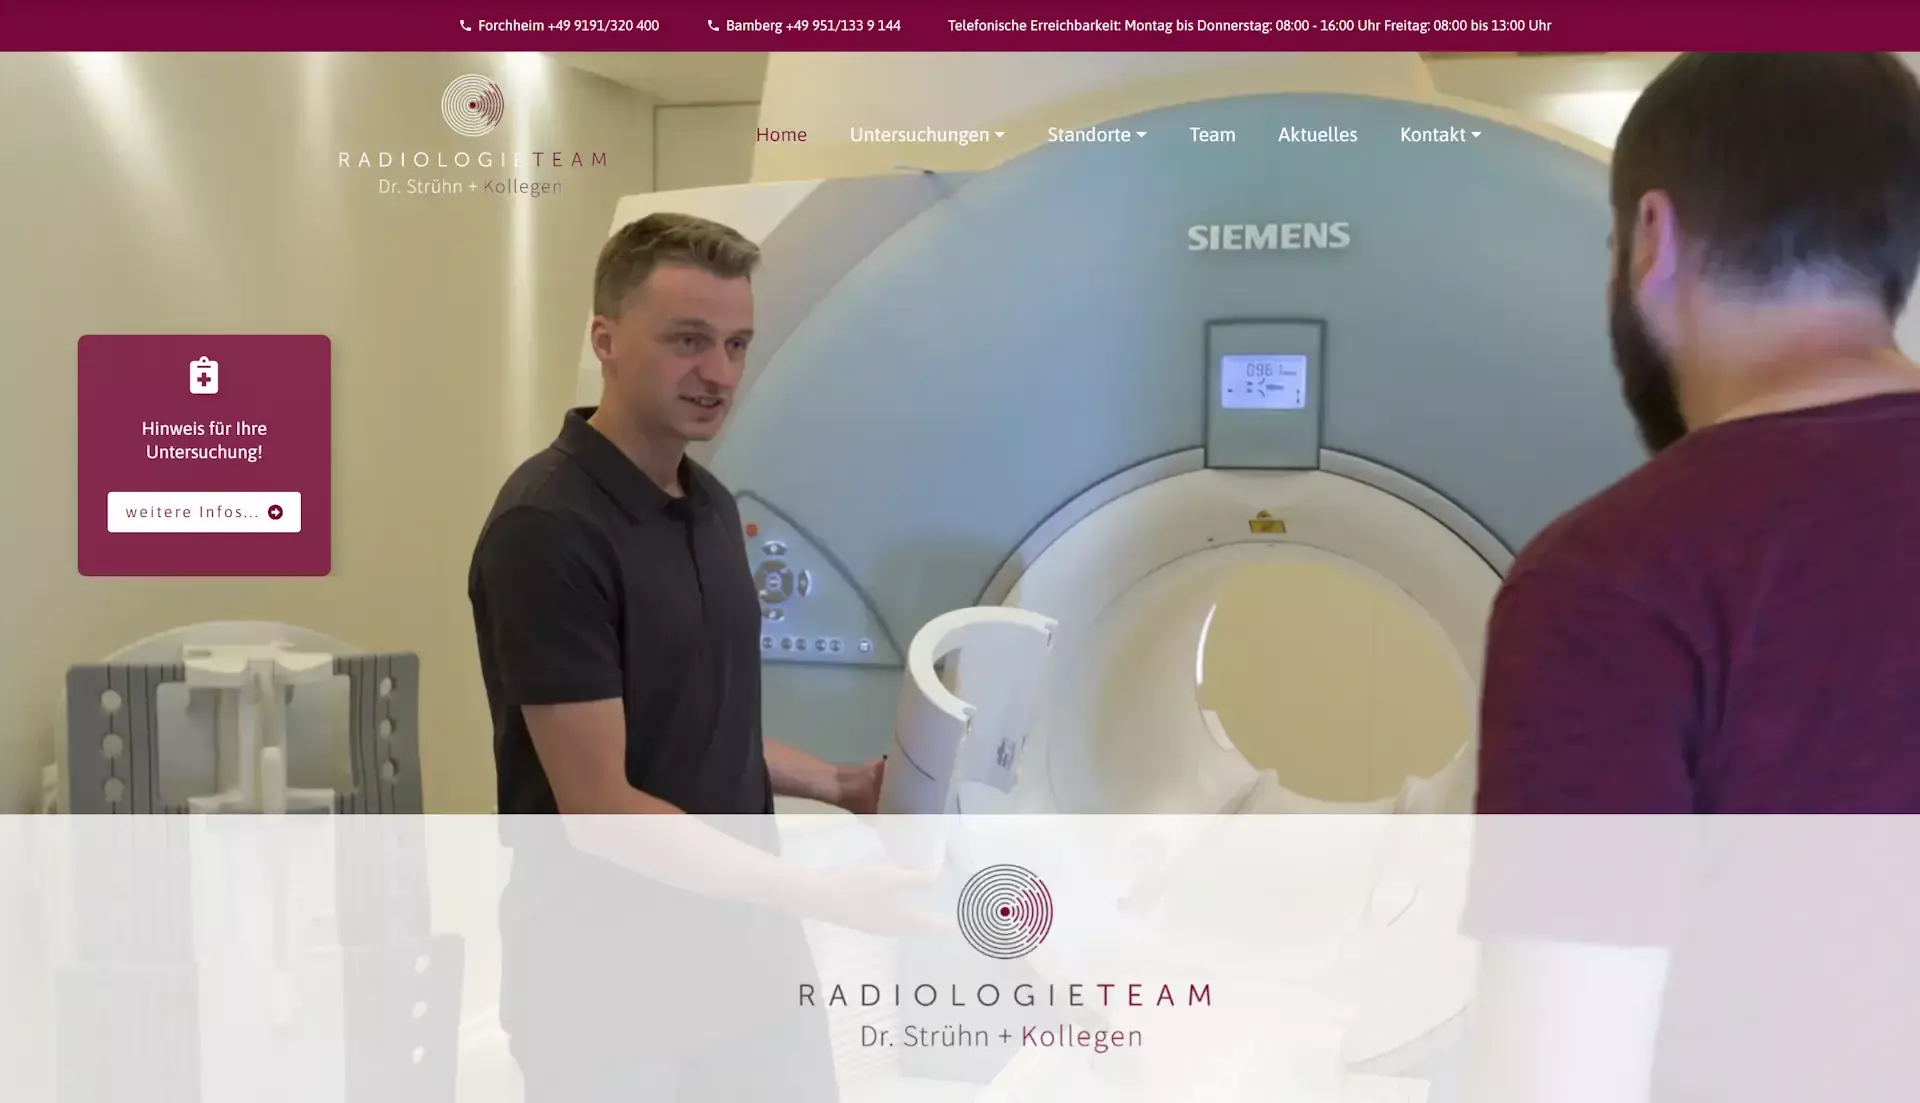 neue Website von Radiologieteam Dr. Strühn + Kollegen ist online!